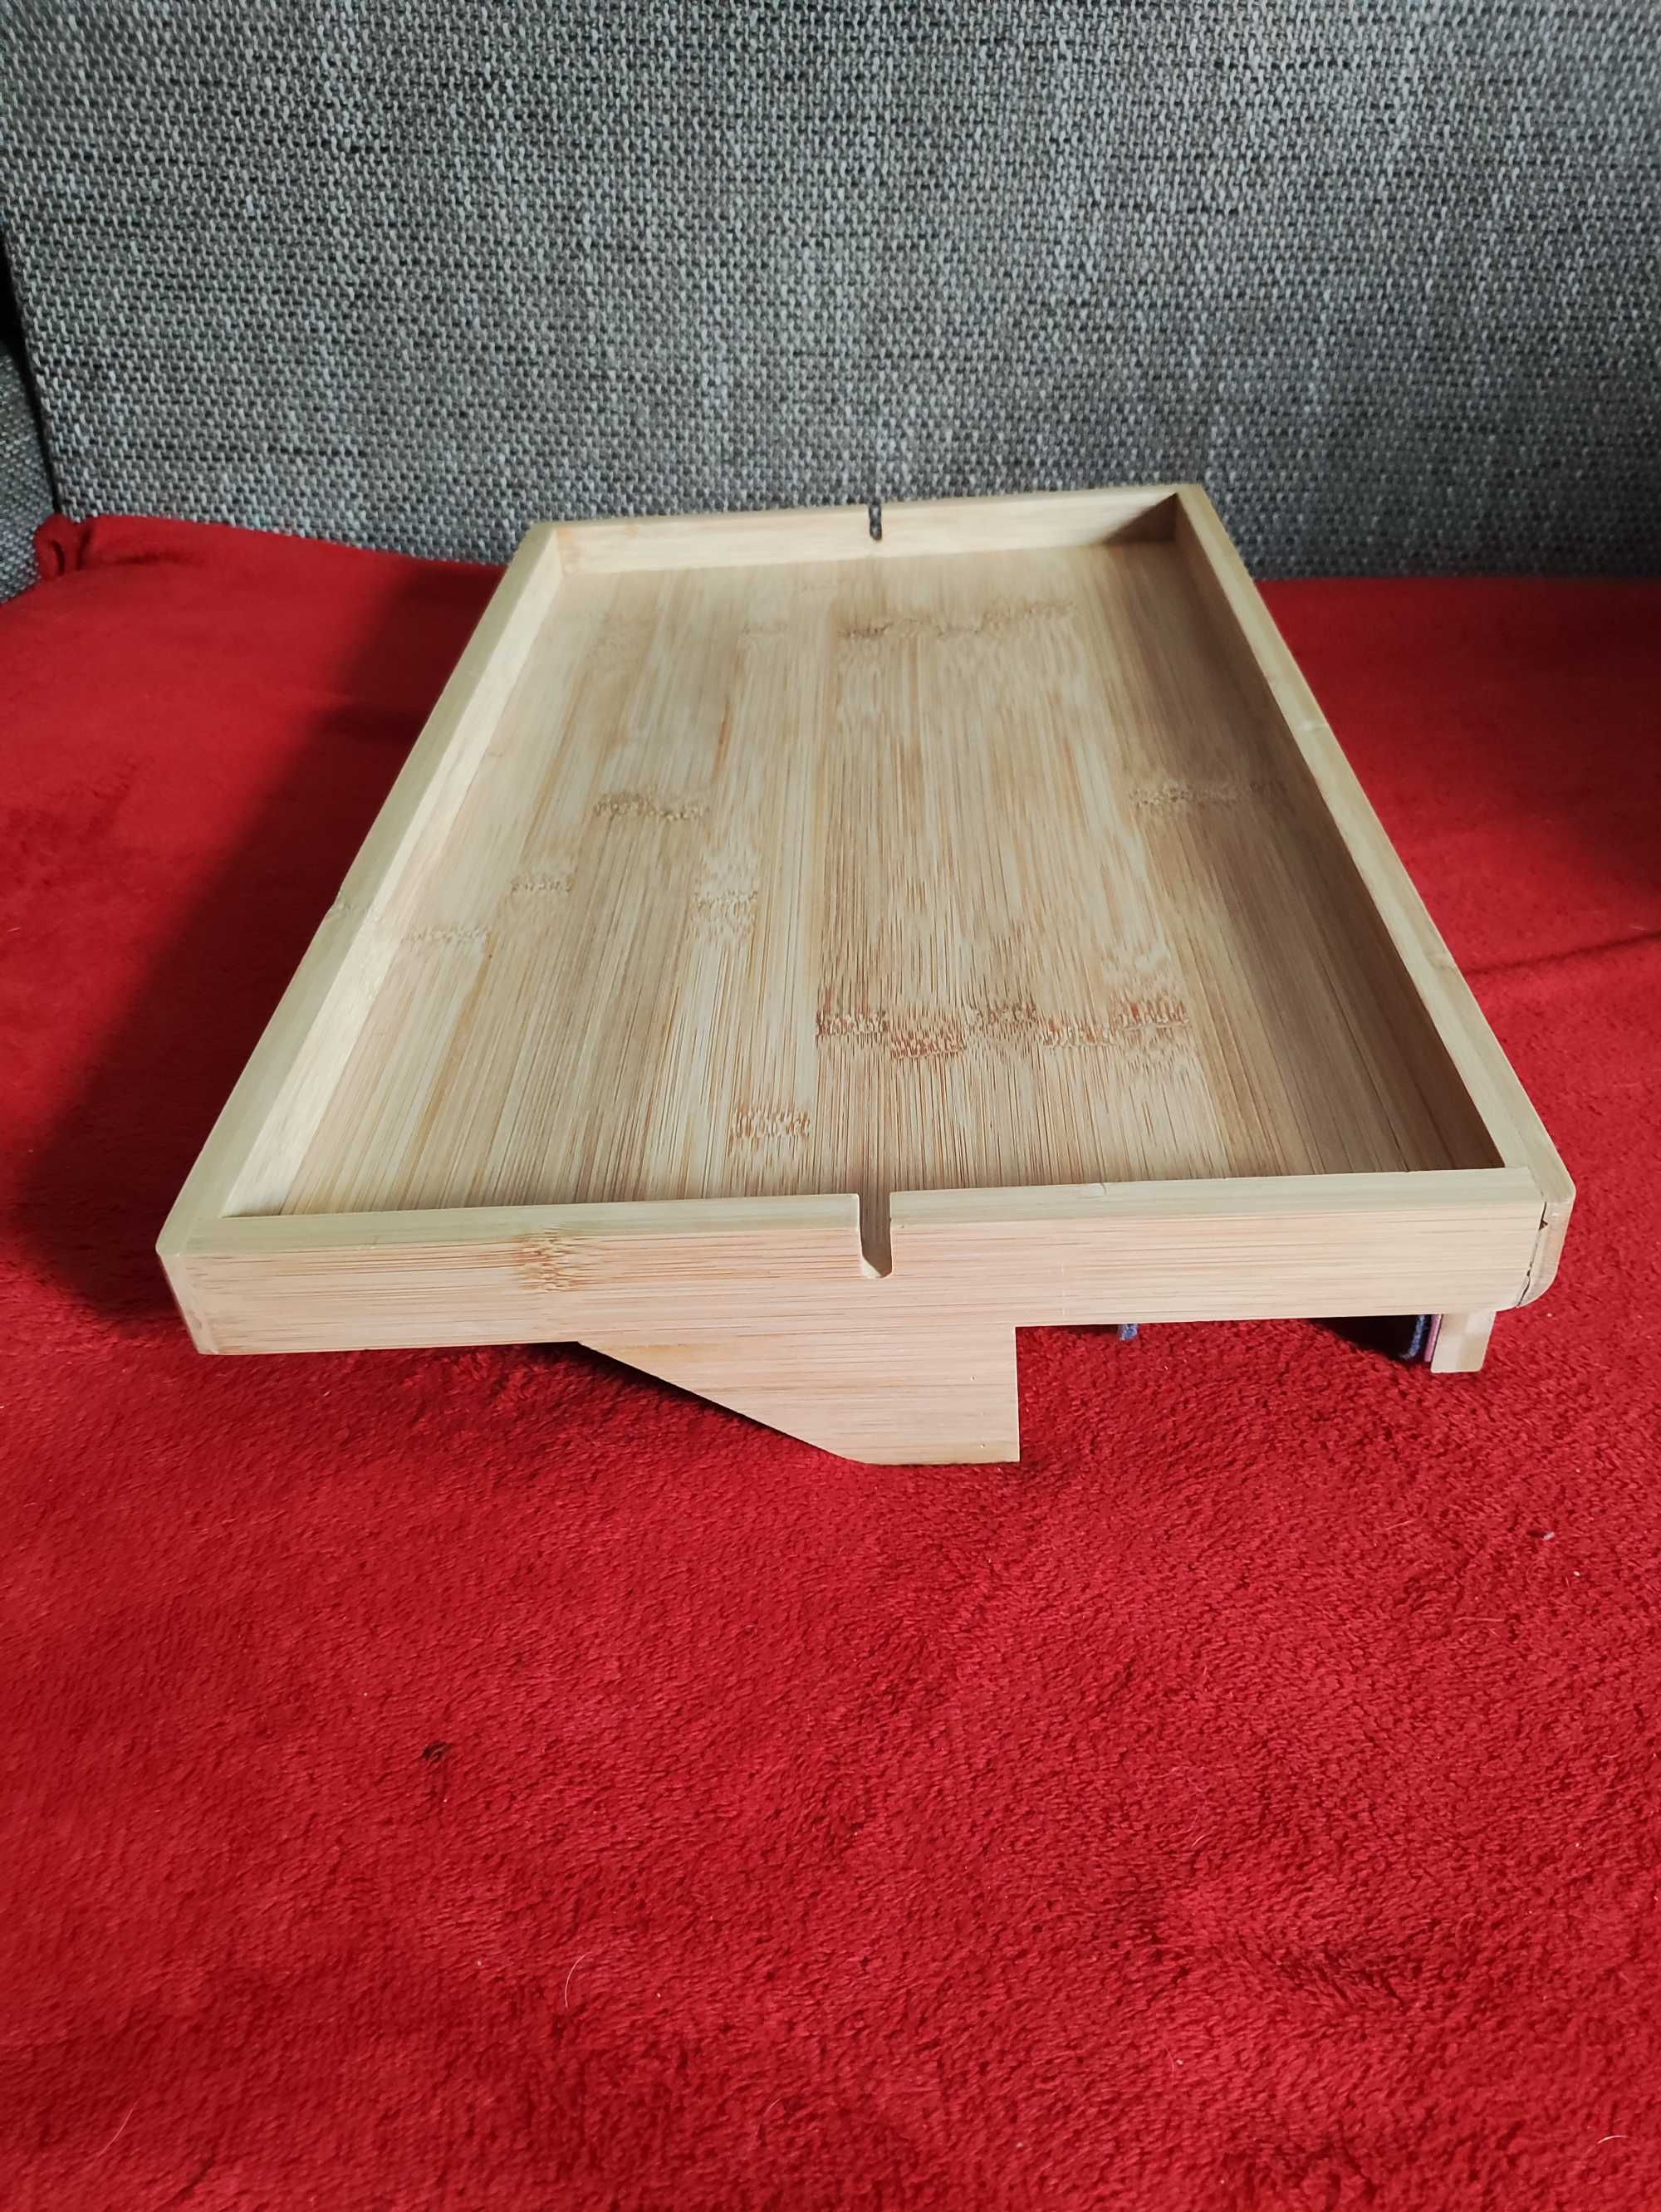 Stolik przyłóżkowy BedShelfie do łóżka Rehabilitacyjnego stół